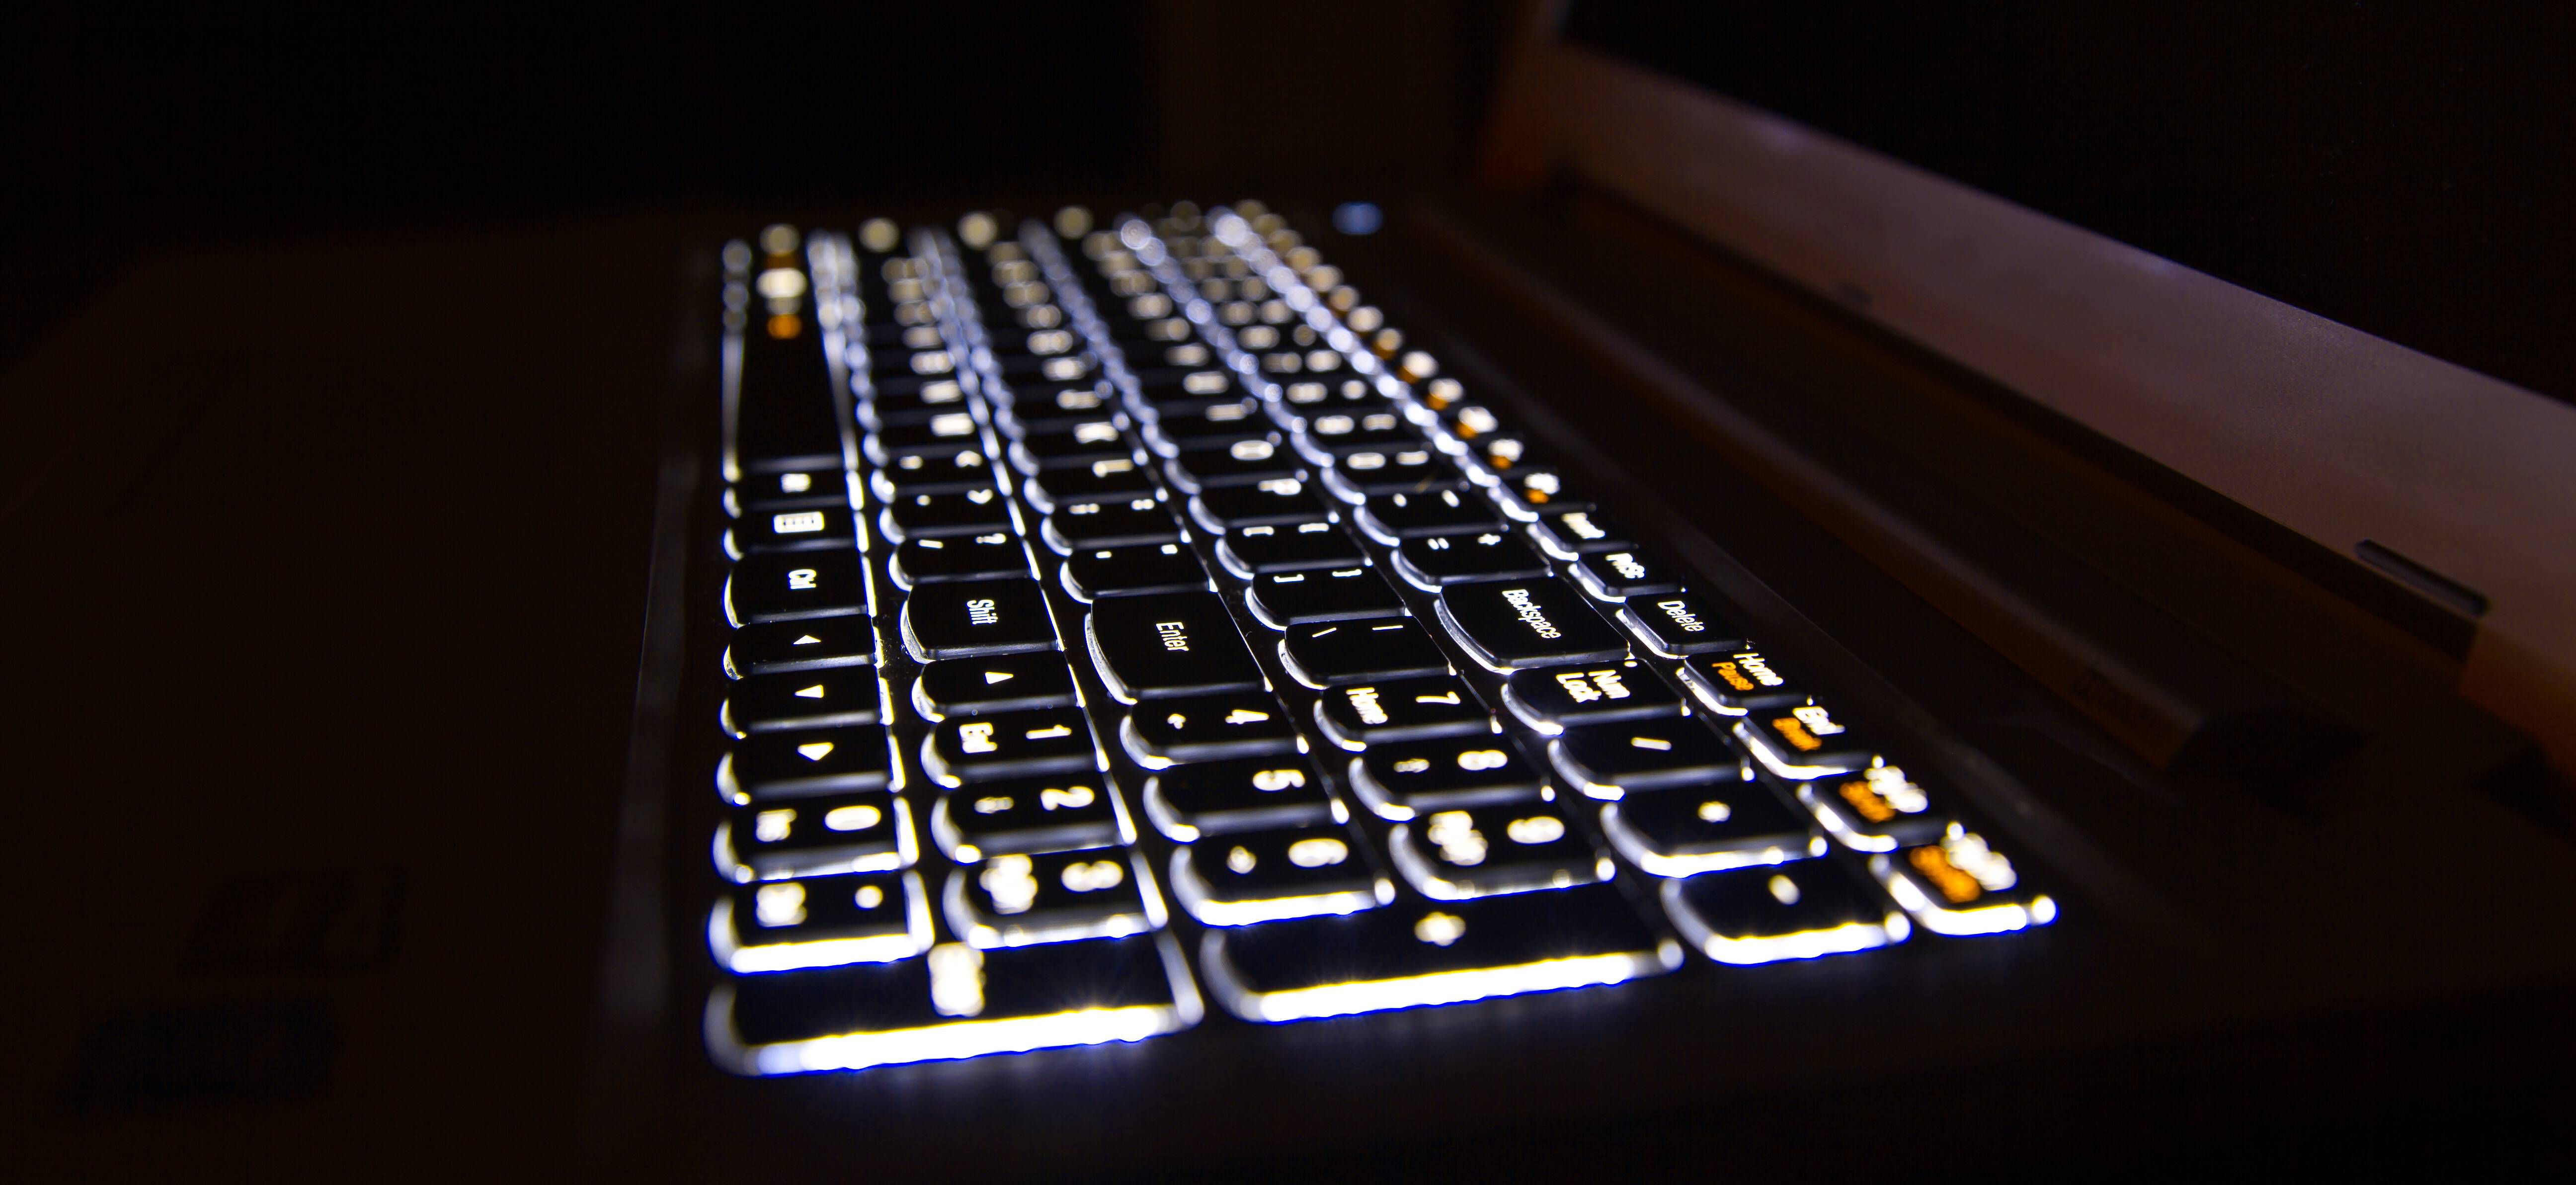 Cara Menghidupkan Lampu Keyboard